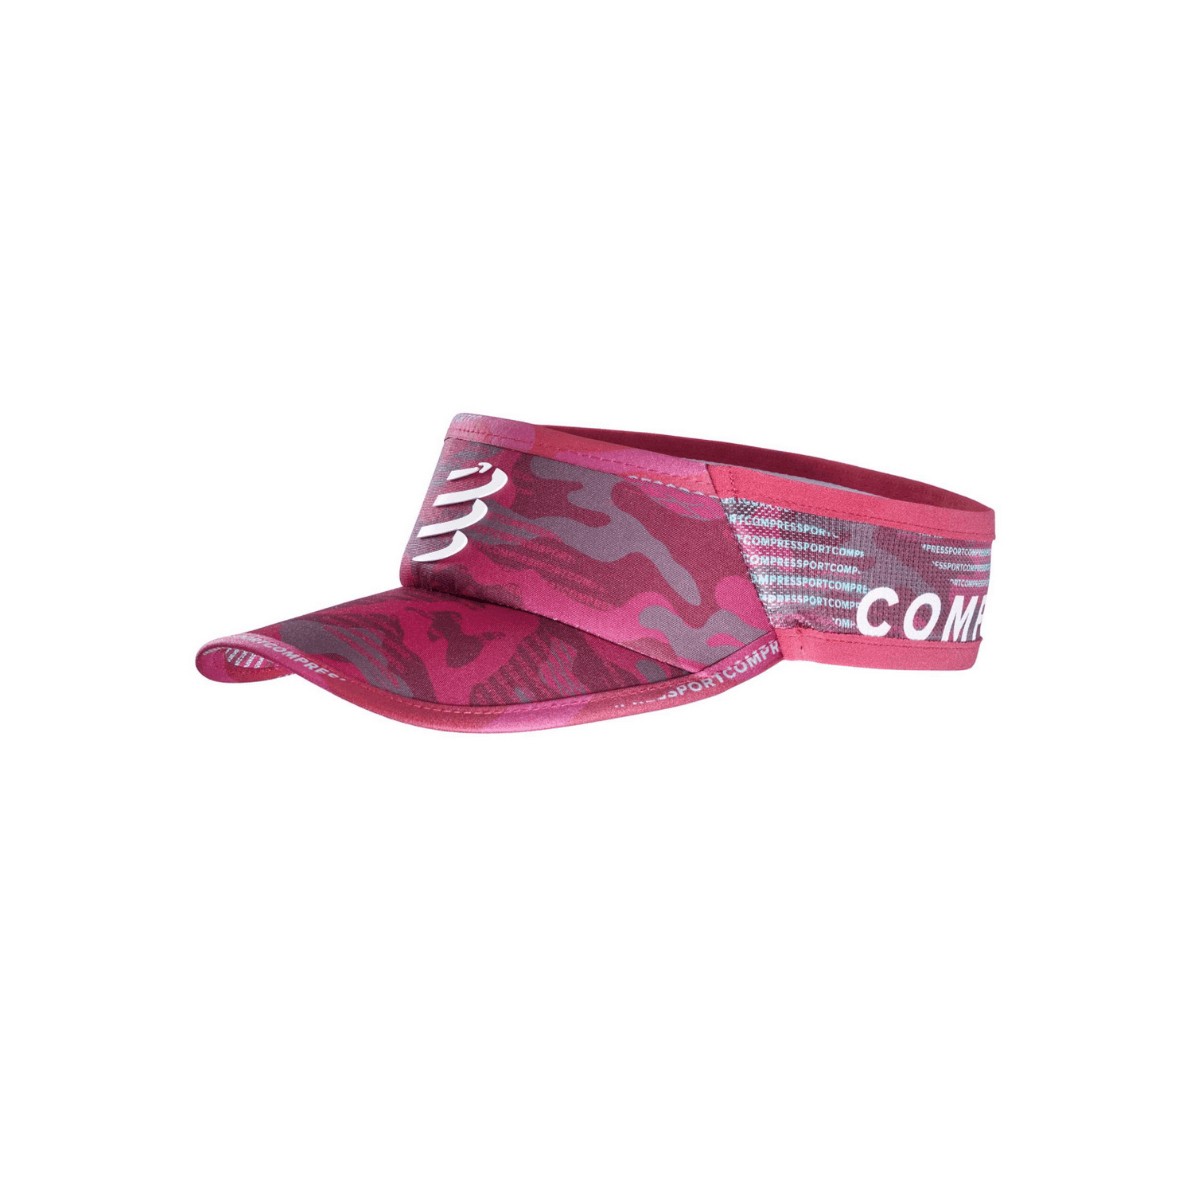 Visor Compressport Ultralight Camo Neon 2020 Rojo, Talla L (56-61 cm)